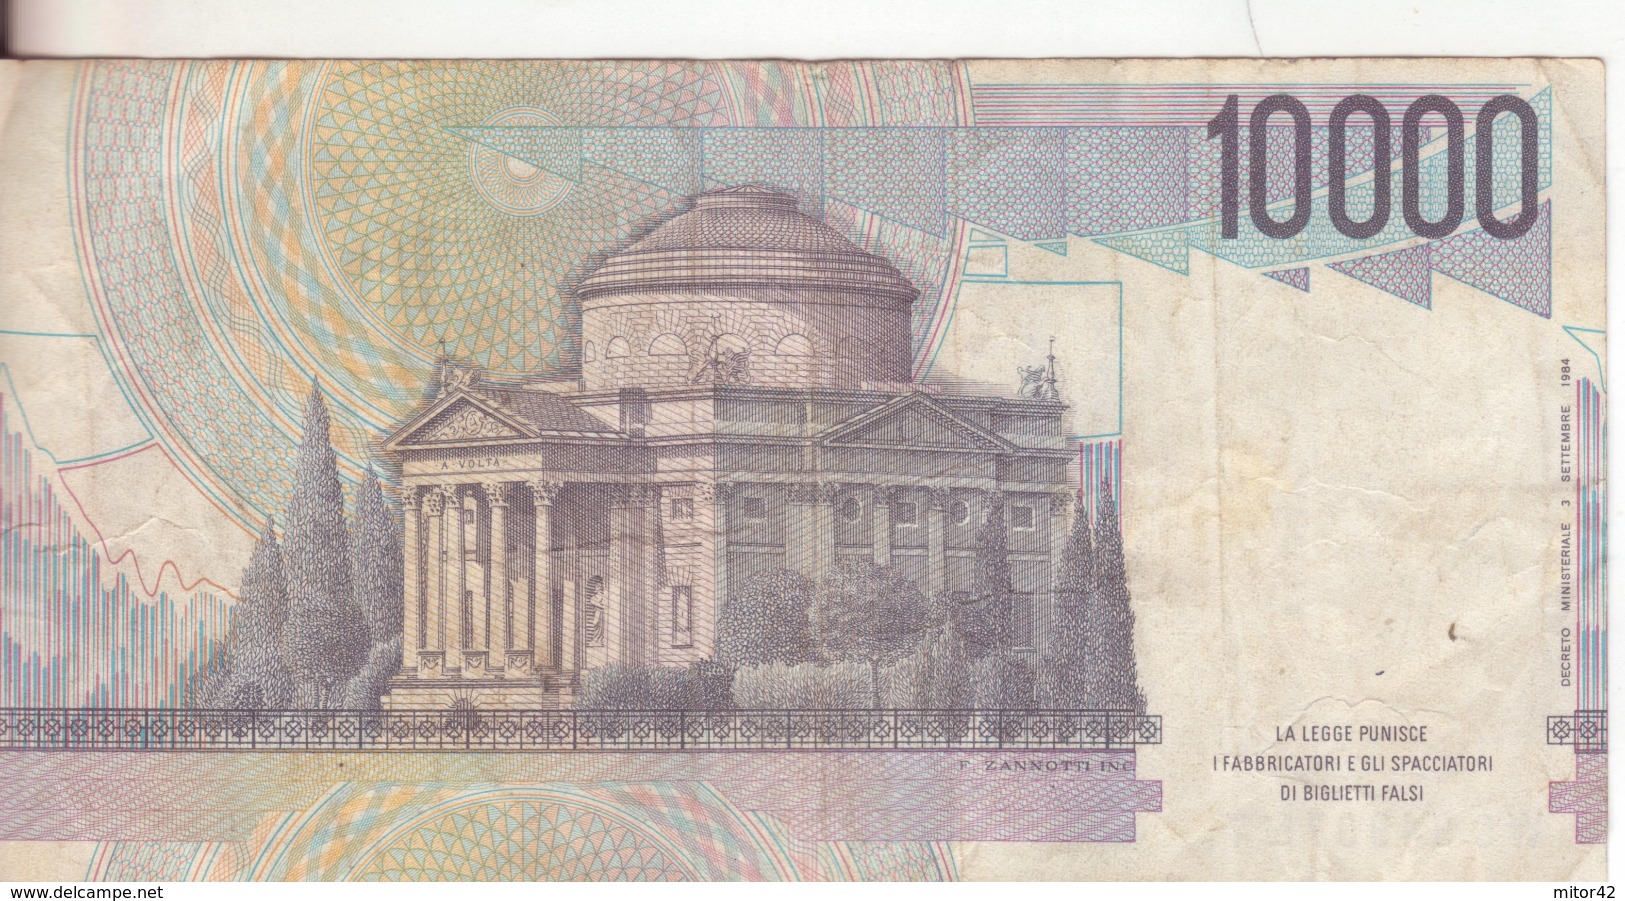 68*-Cartamoneta-Banconota  Italia Repubblica Da L10.000 Volta-Serie WC 949075 T-Condizione:Circolata - 10.000 Lire